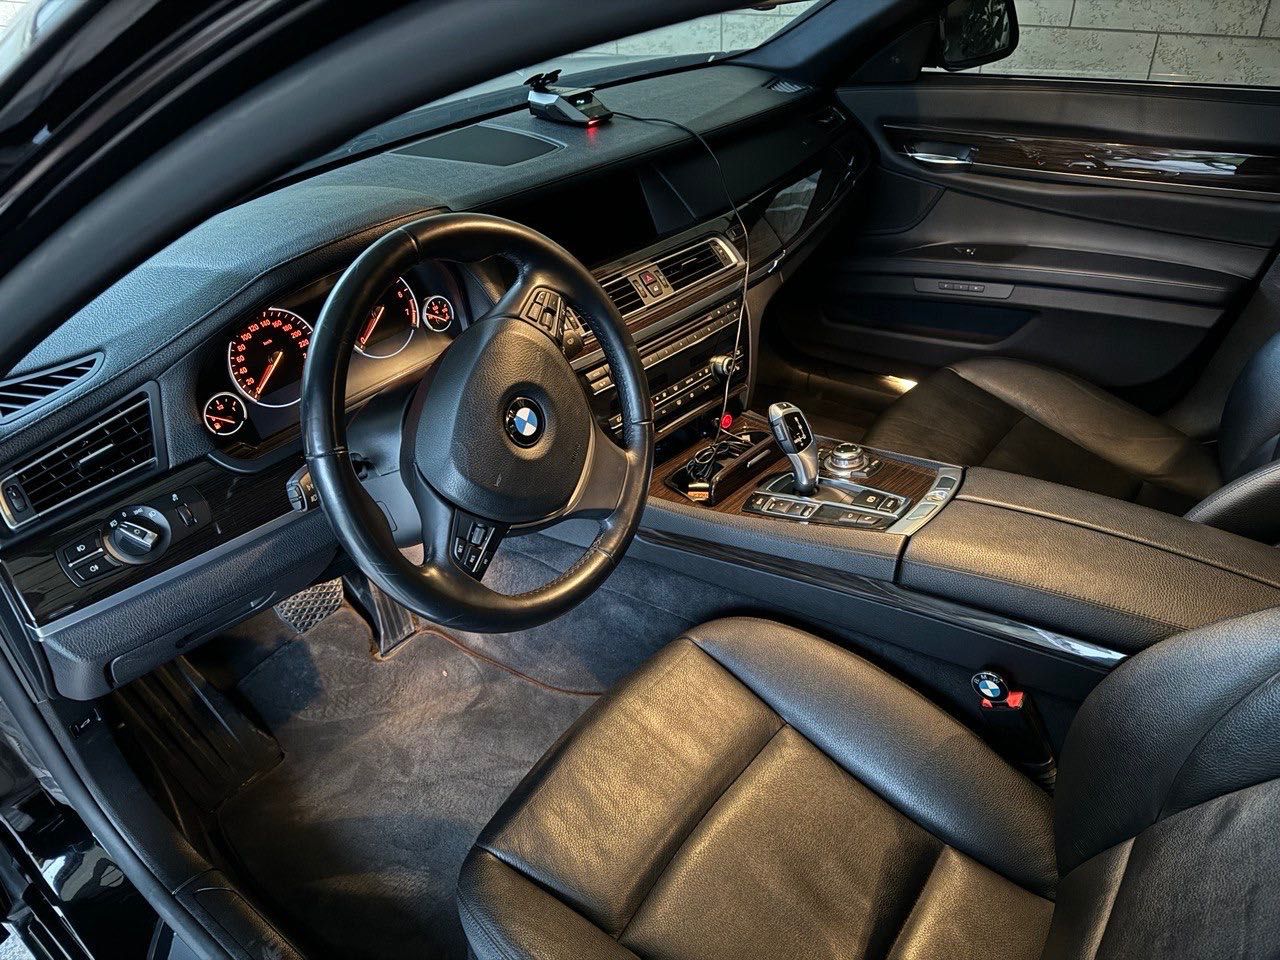 BMW 740i год 2012. пробег 82000. очень хорошее состояние